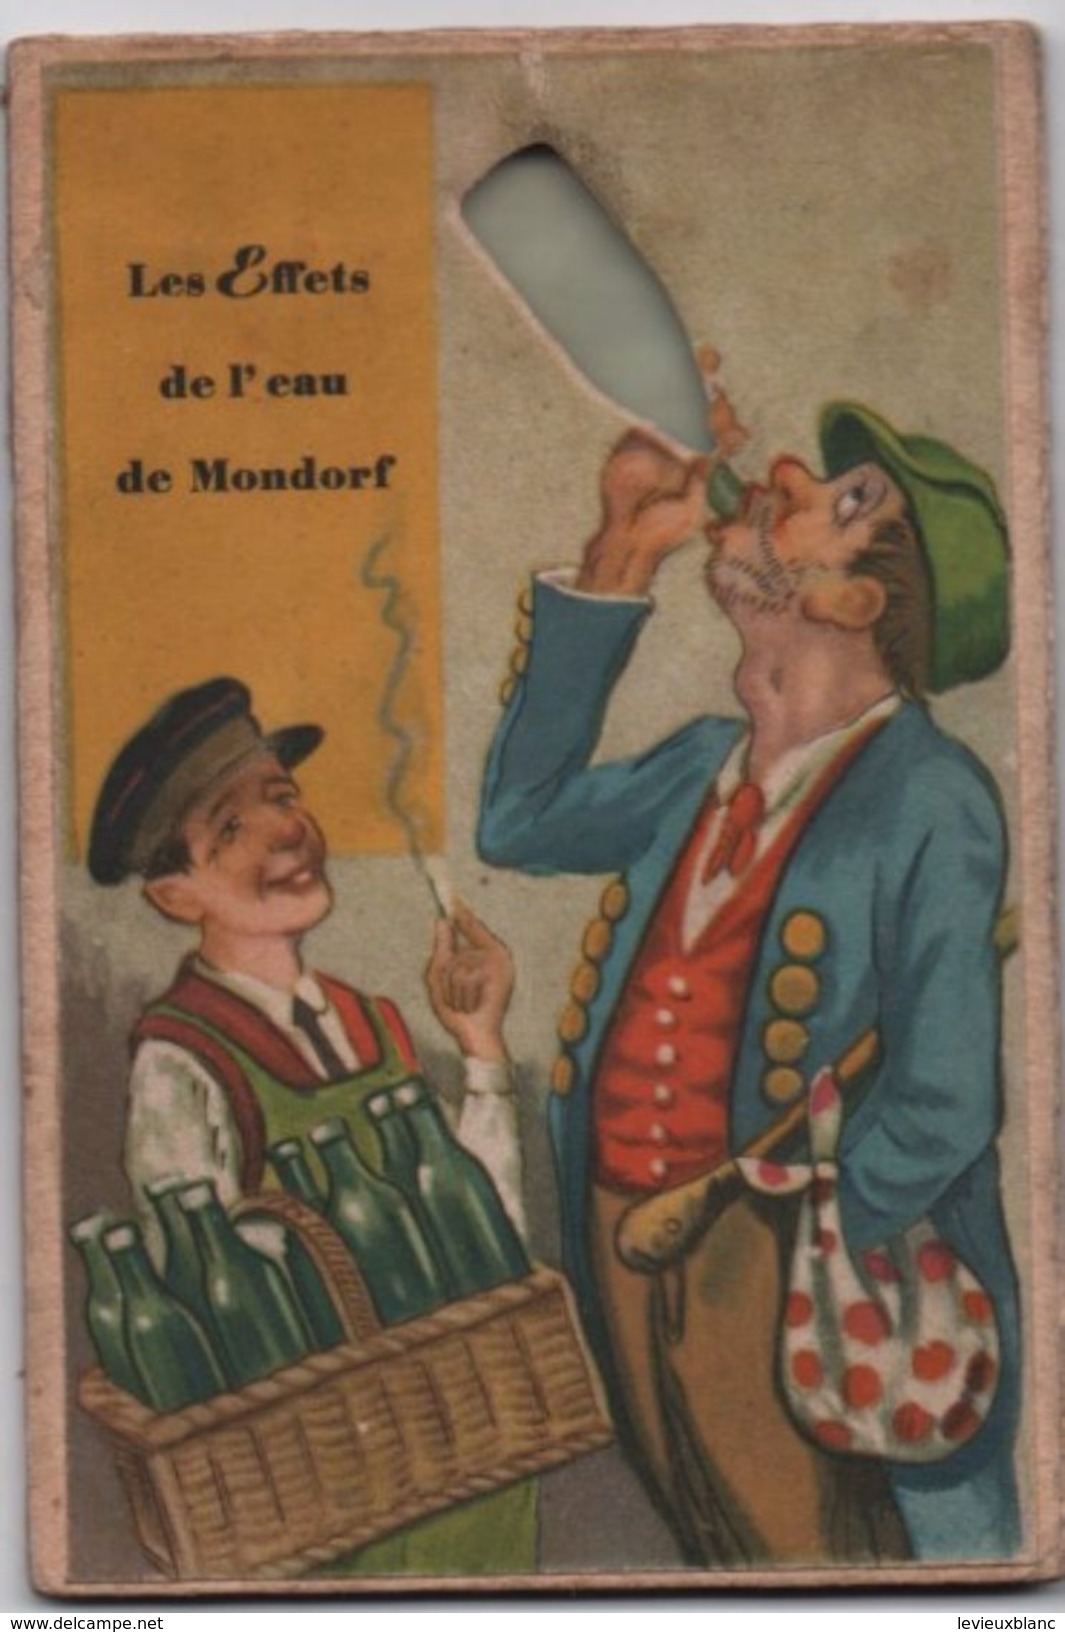 Pub. Humoristique/Centre Thermal De Mondorf Les Bains/Luxembourg/Les Effets De L'eau De MONDORF/vers1930-50      CPH26 - Publicités